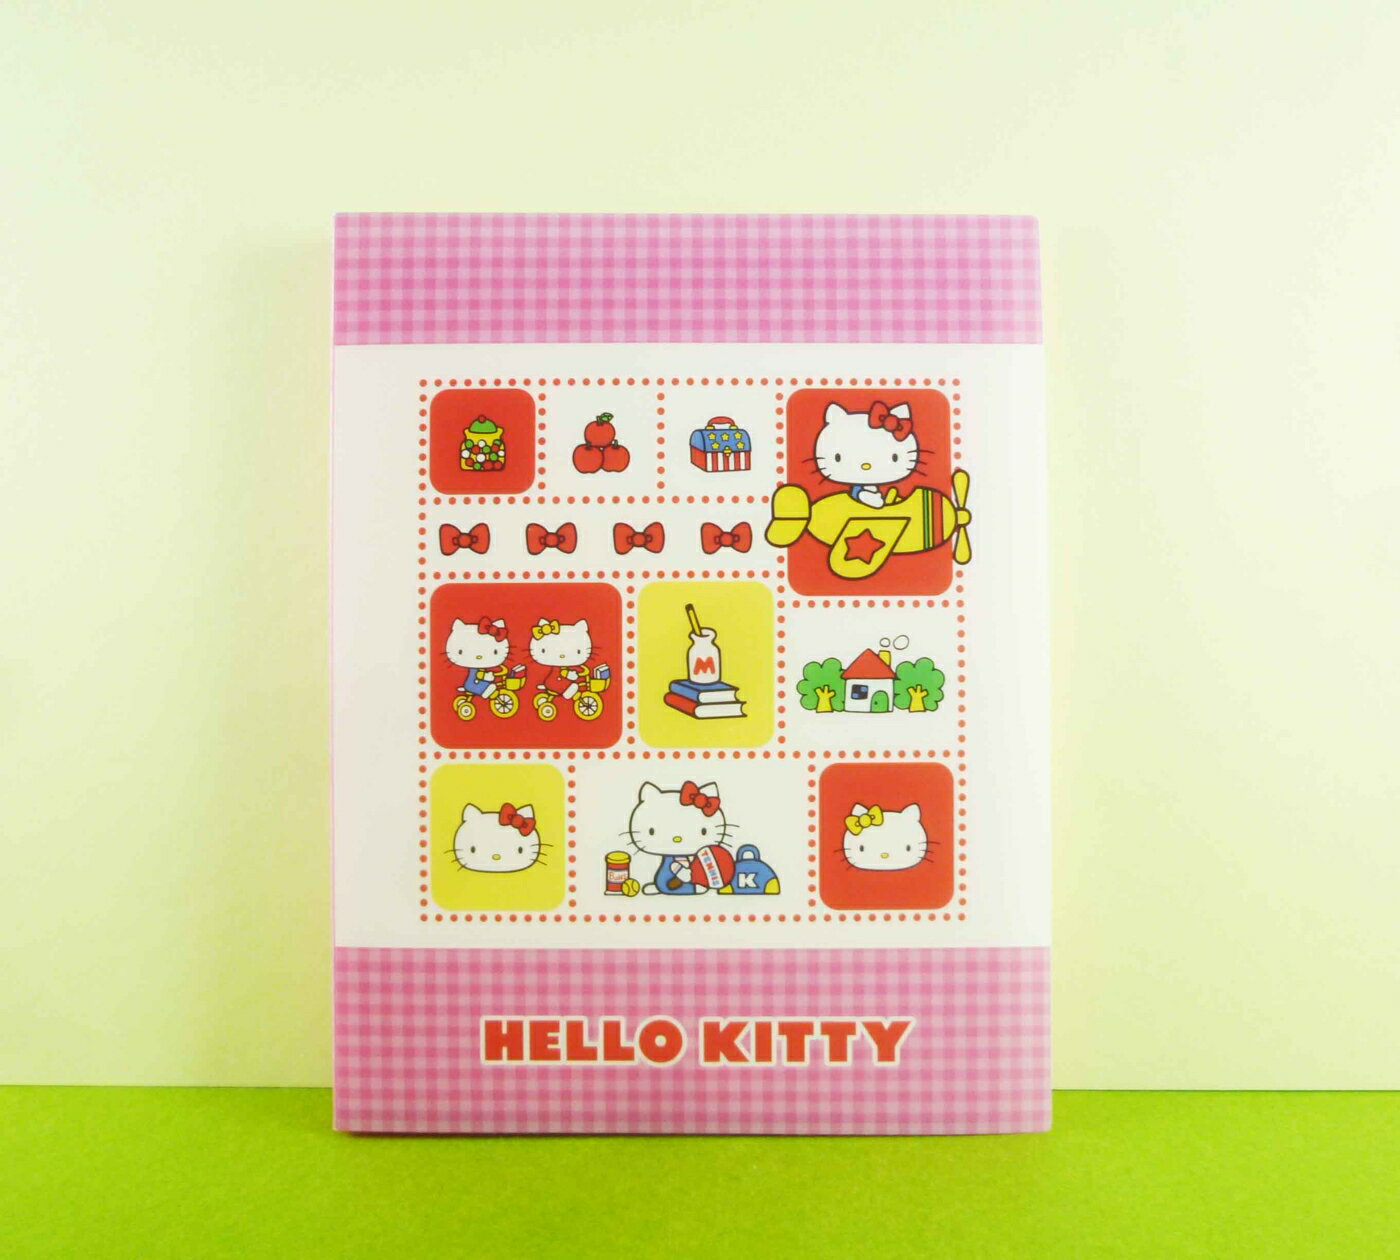 【震撼精品百貨】Hello Kitty 凱蒂貓 3*5相本 飛機【共1款】 震撼日式精品百貨